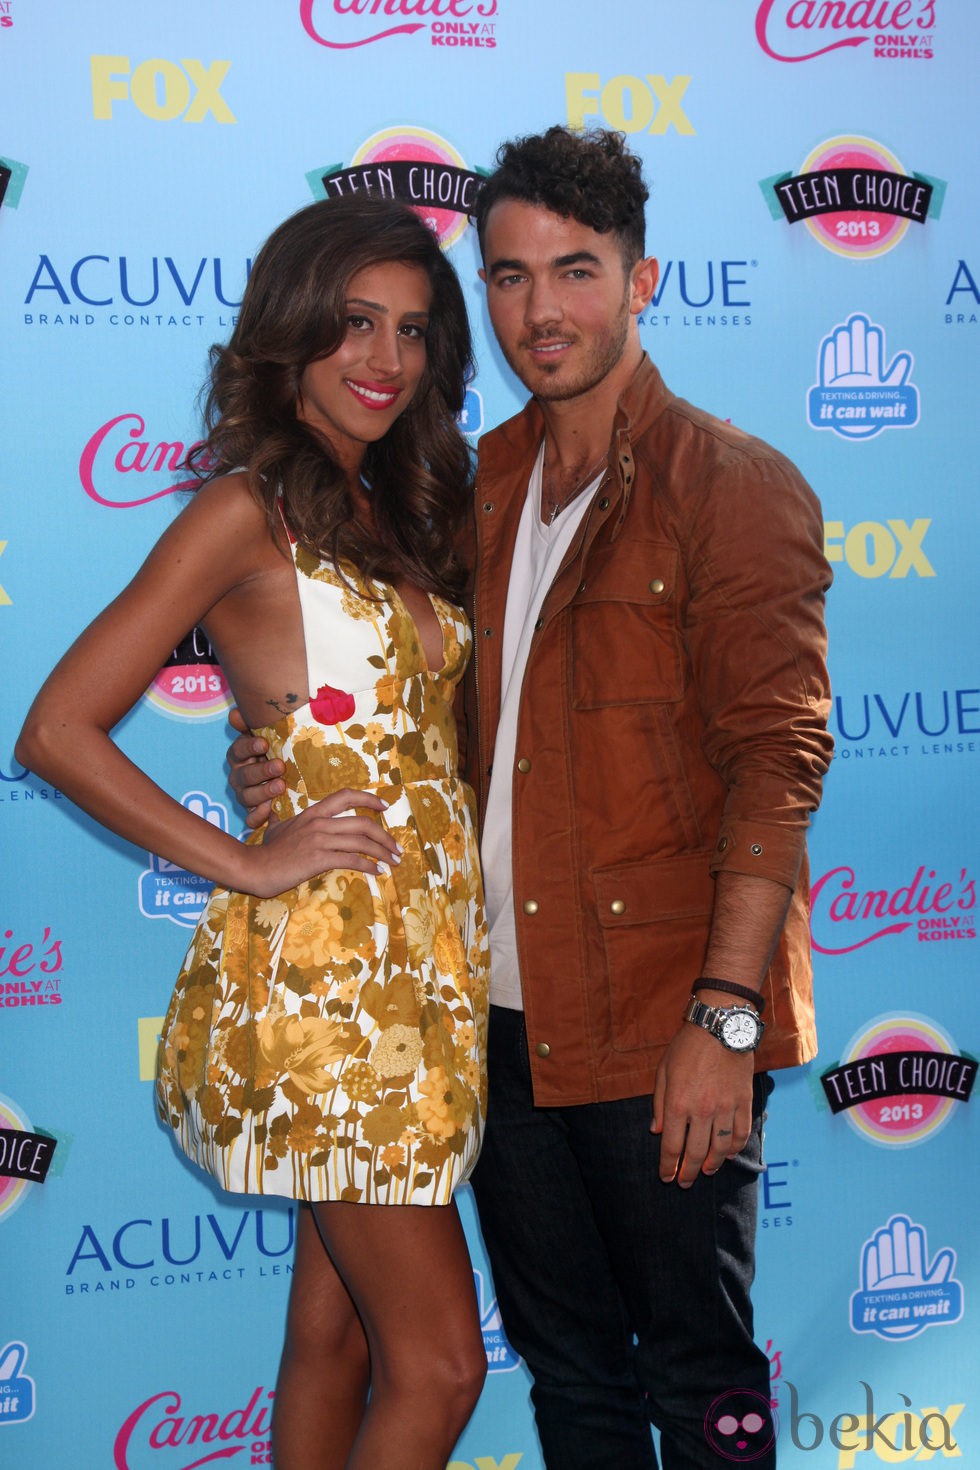 Kevin y Danielle Jonas posando en la alfombra roja de los Teen Choice Awards 2013